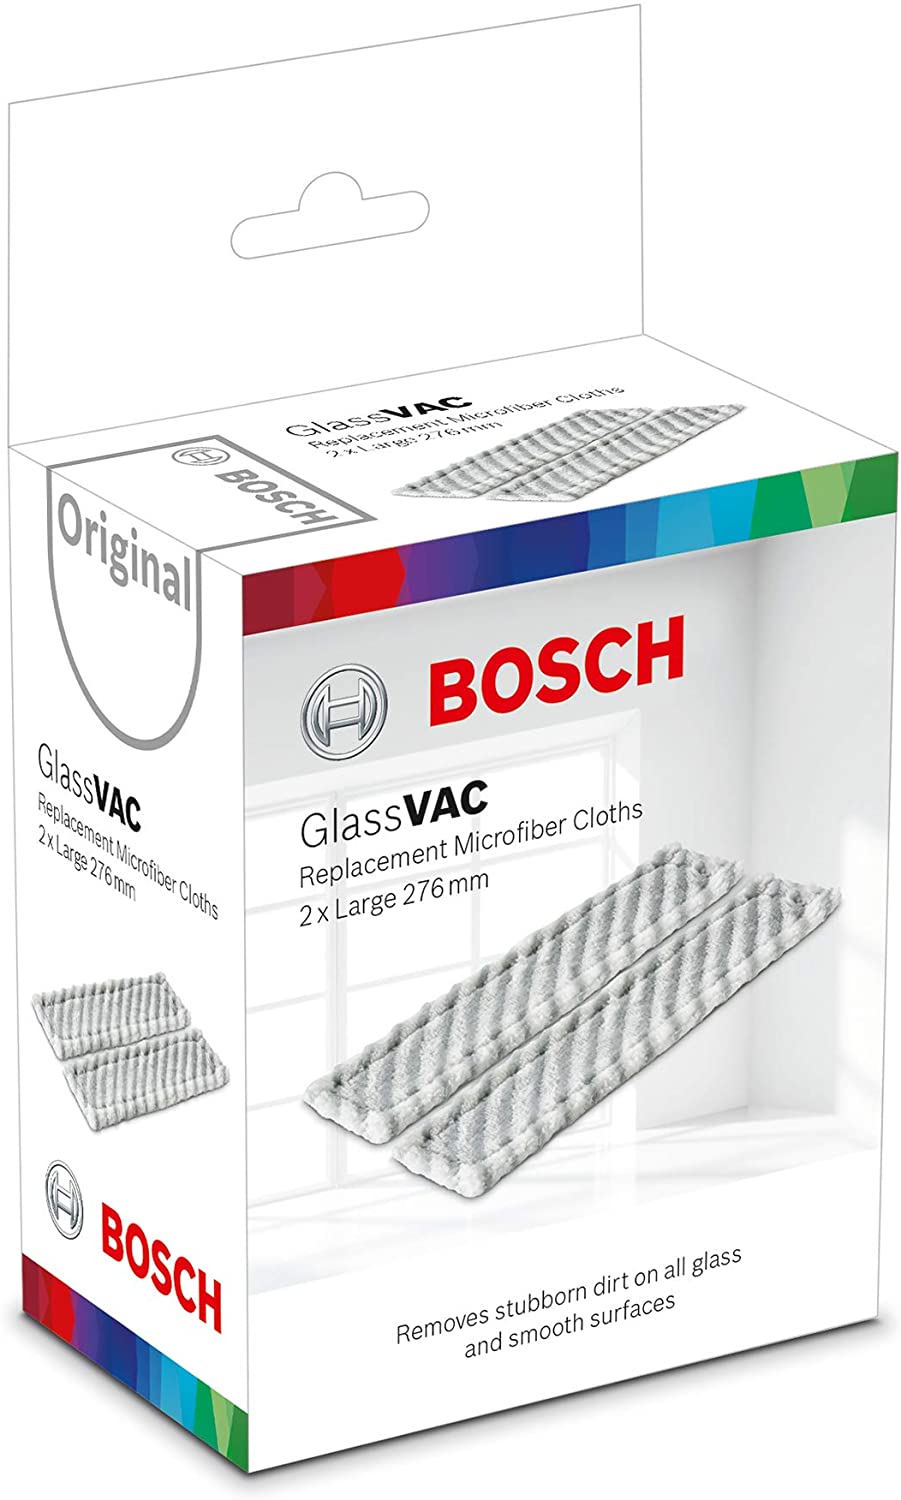 Мікрофібра Bosch мікрофібра GlassVAC відгуки - зображення 5